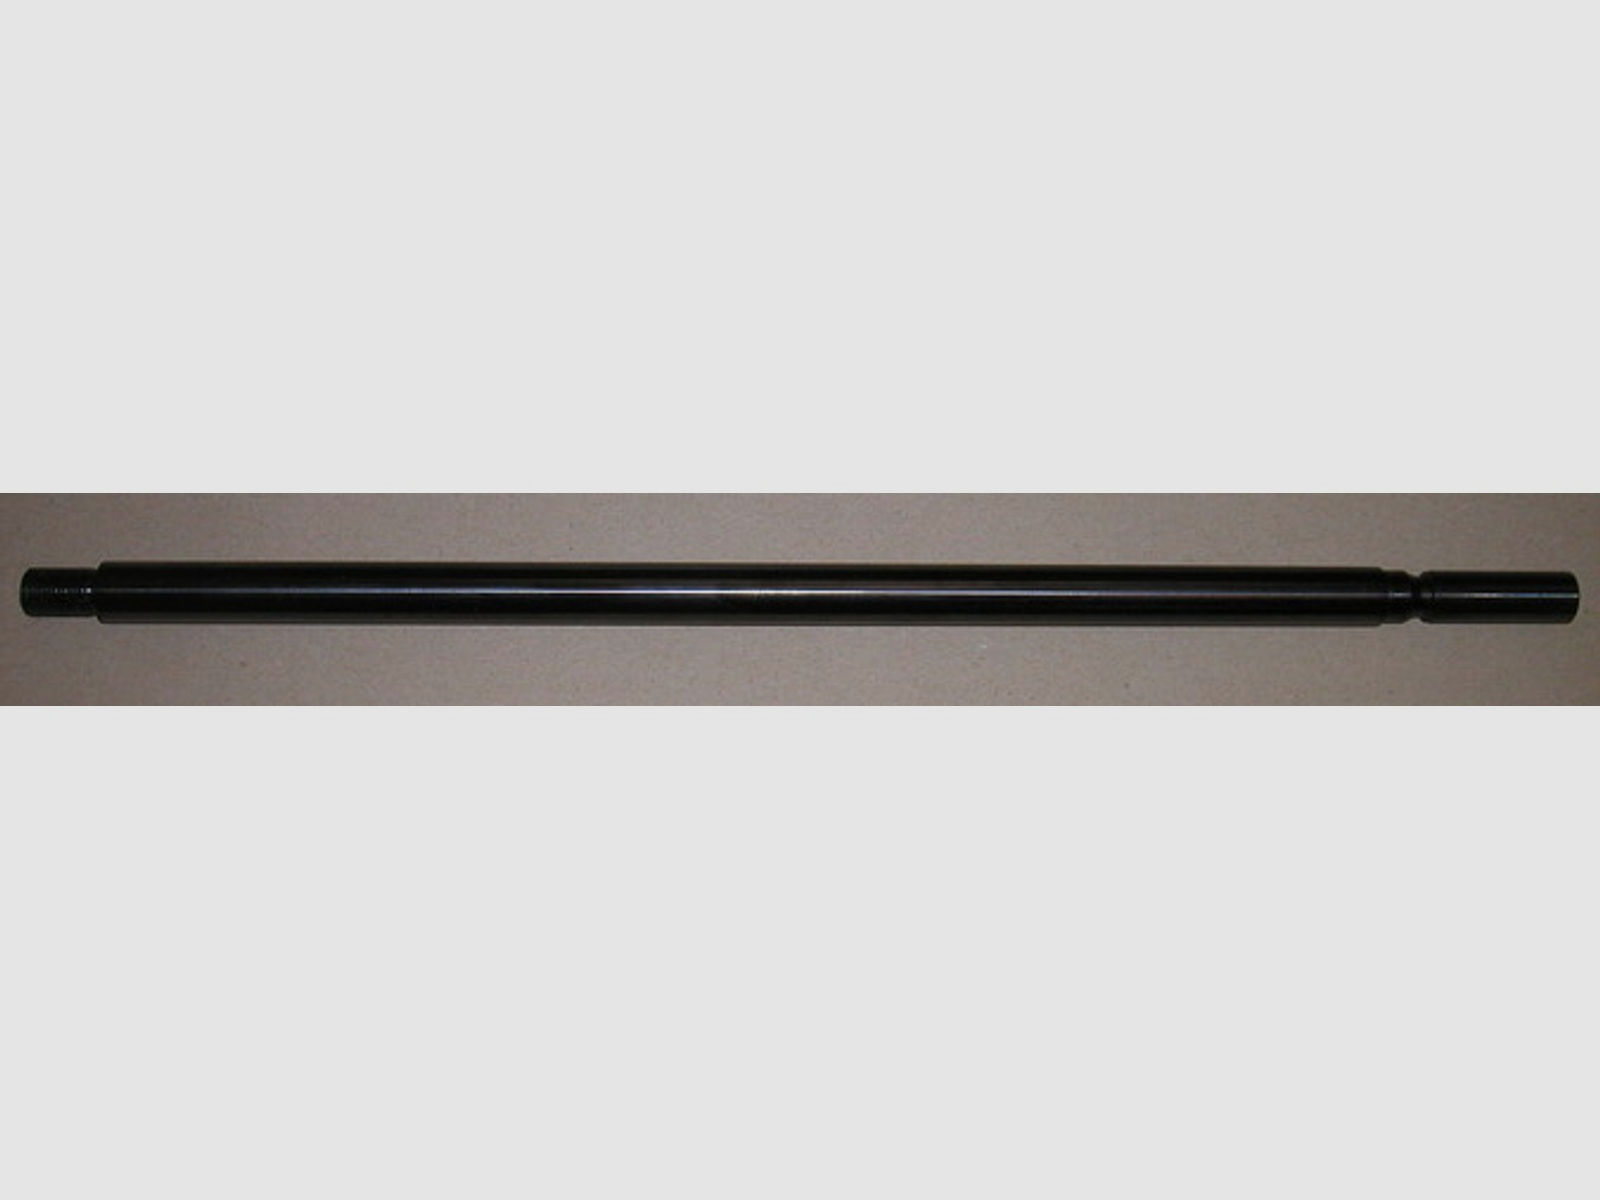 Wechsellauf mit SchalldĂ¤mpfergewinde 41 cm Kal. 5,5 mm fĂĽr Pressluftgewehr Weihrauch HW 100 (P18)